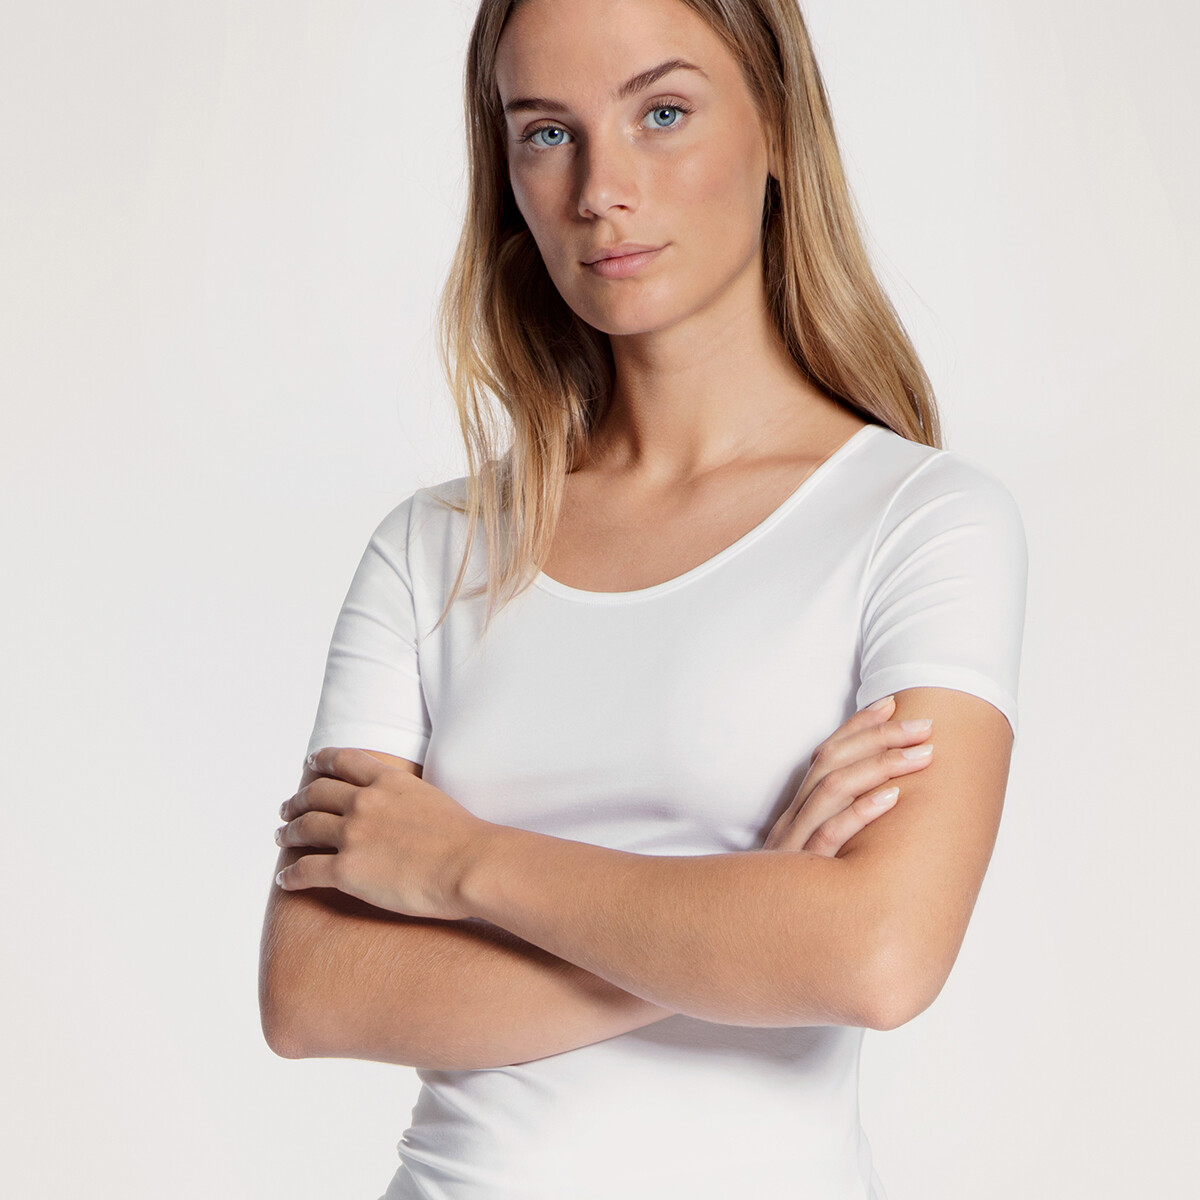 Se Calida T-shirt, Farve: Hvid, Størrelse: L, Dame hos Netlingeri.dk